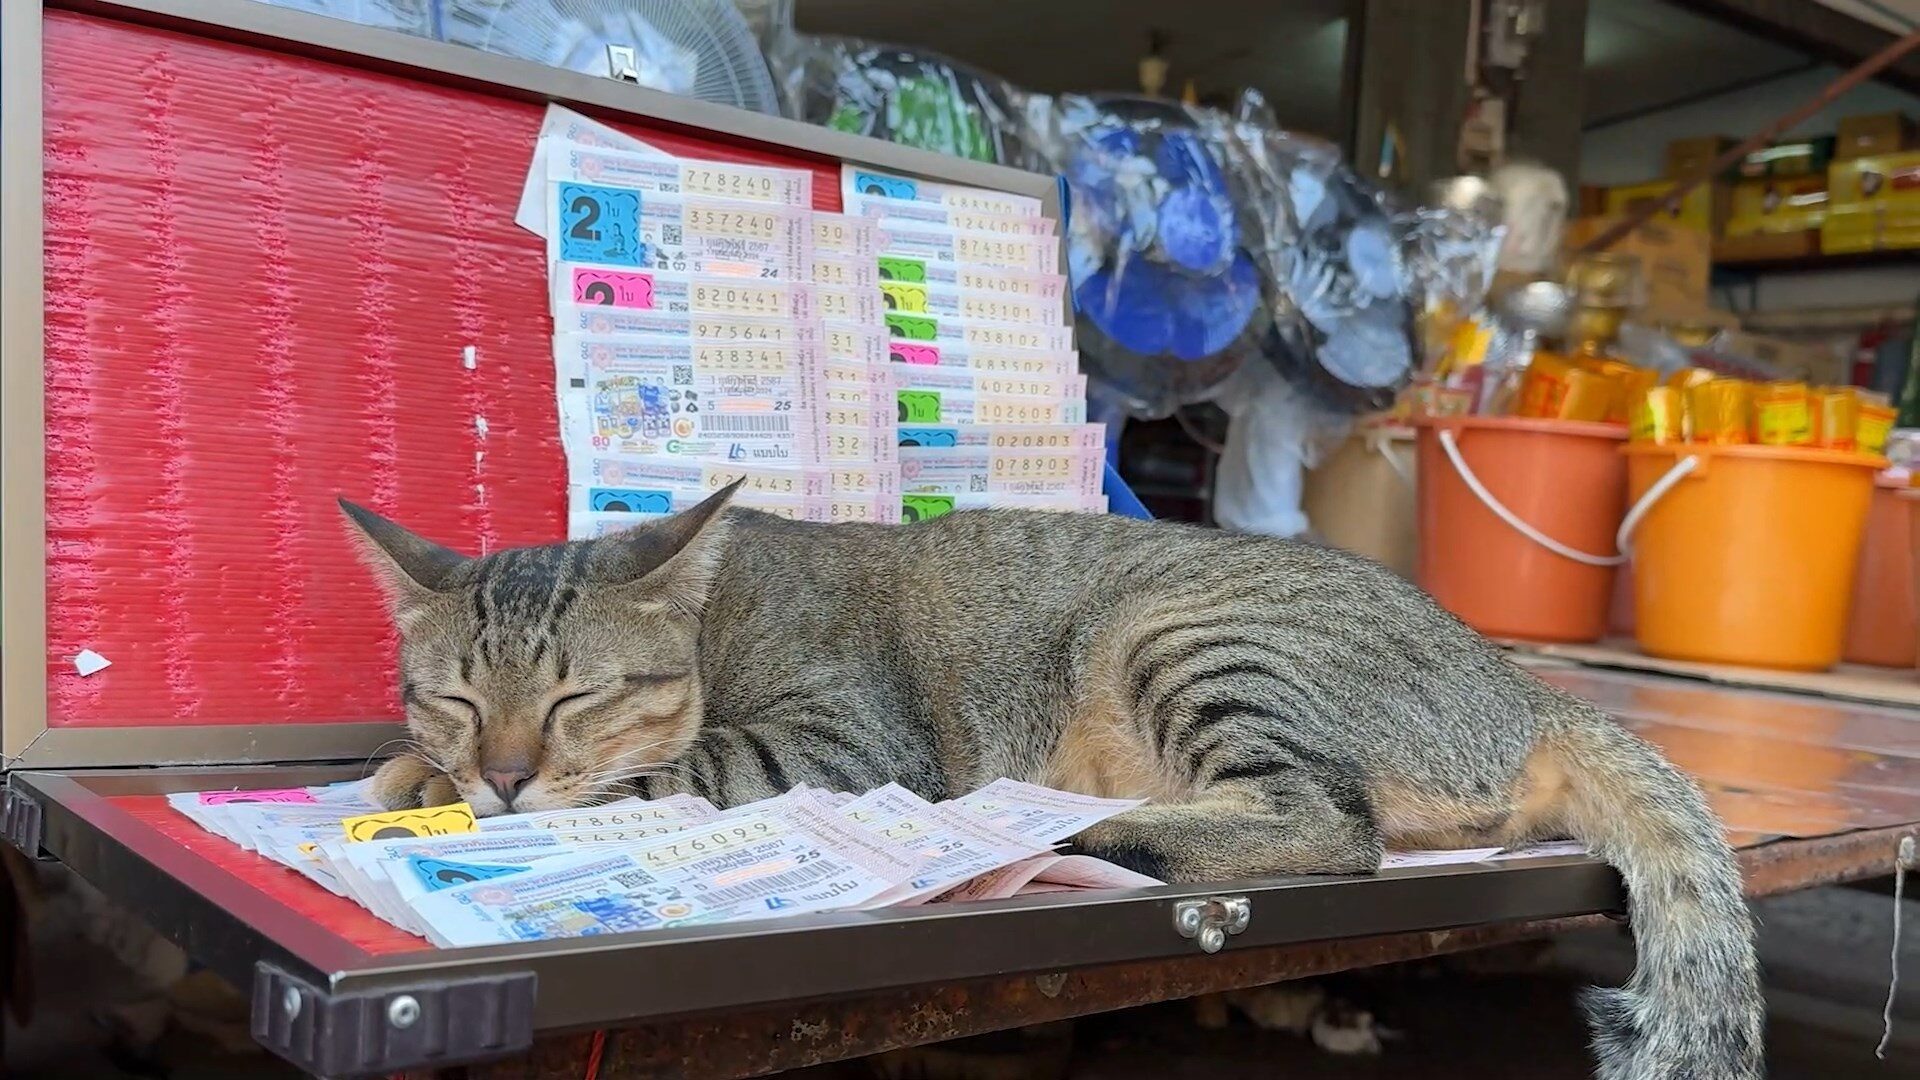 แม่ค้าสุดงง อยู่ๆขายดี เจ้าแมวขี้เซา ขึ้นนอนทับแผงลอตเตอรี่ คนแห่ซื้อ แอบส่งเลขน้อง